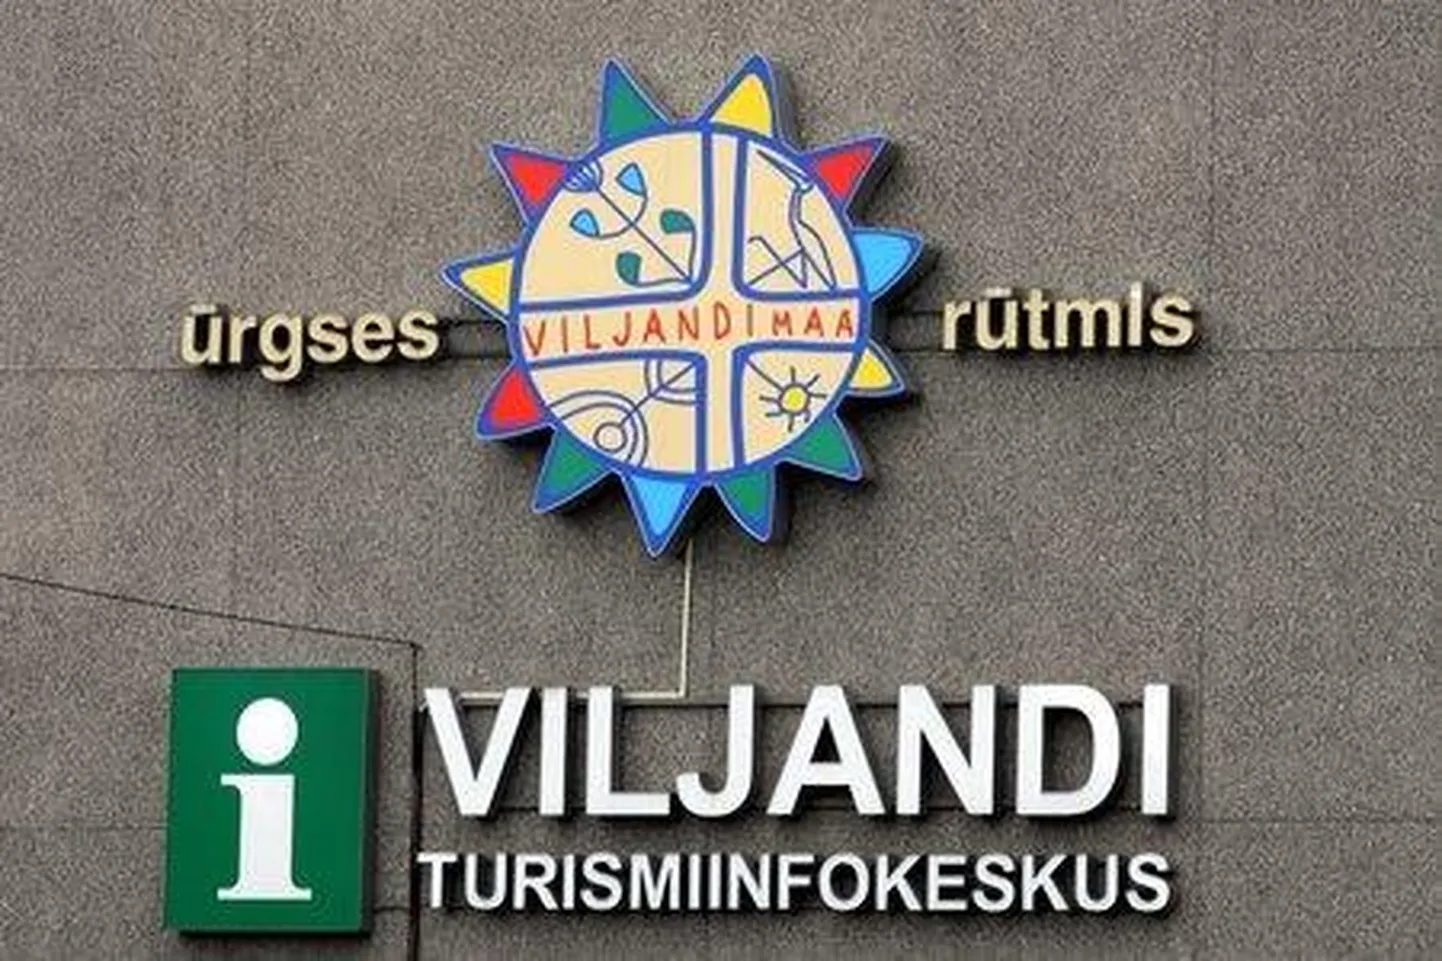 Seni ametite majas toimetanud Viljandi turismiinfokeskusel tuleb leida uued ruumid. Aprilli algusest kuulub turismiinfokeskus arenduskeskuse alla, kellega koos ta peagi uutesse ruumidesse kolib.